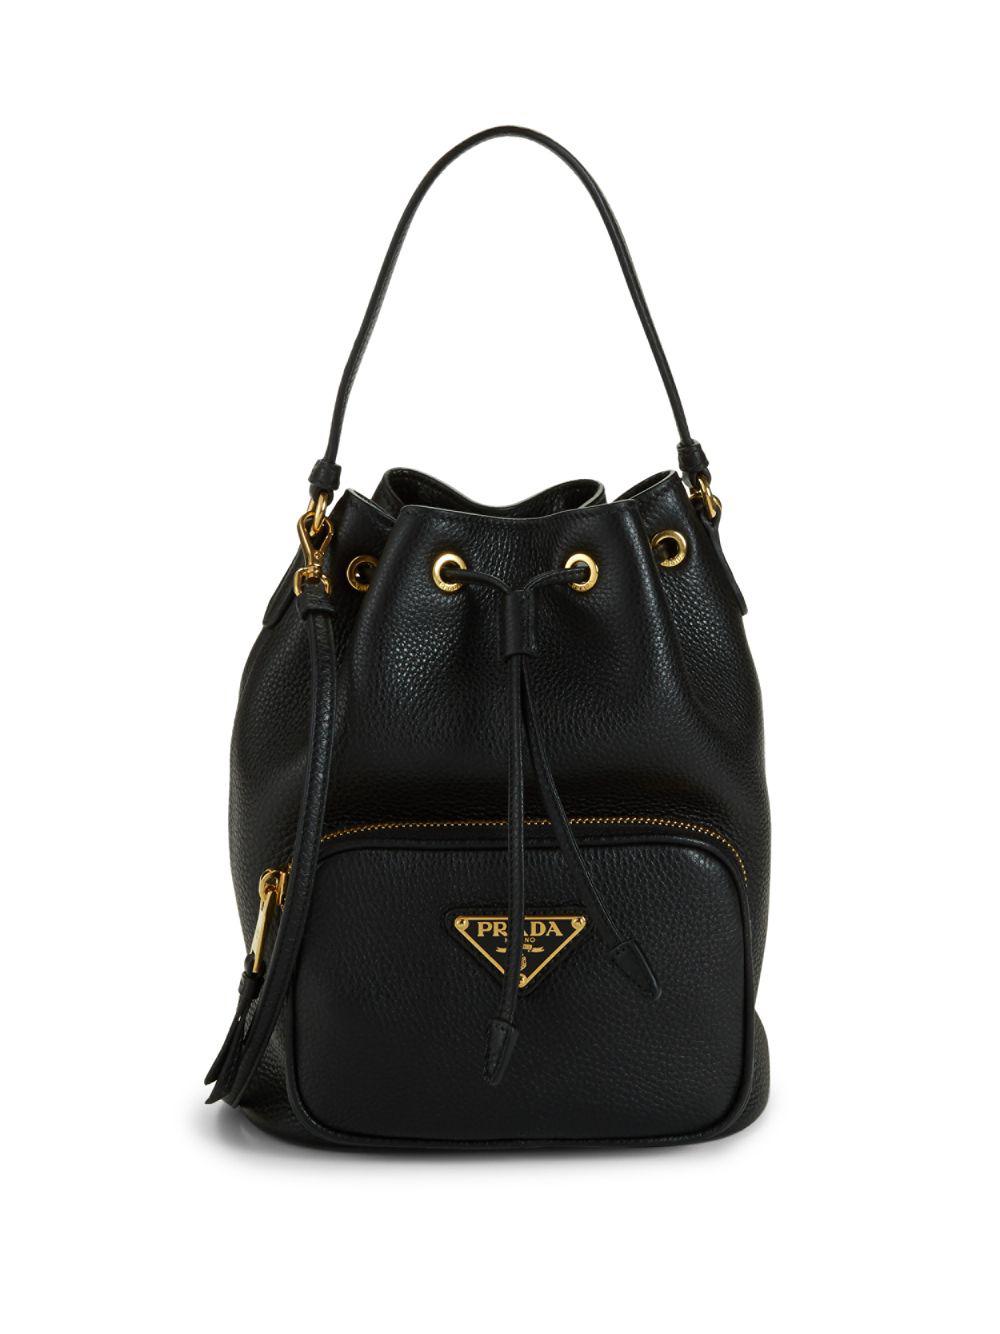 Prada Triangle Logo Leather Bucket Bag in Black - Lyst